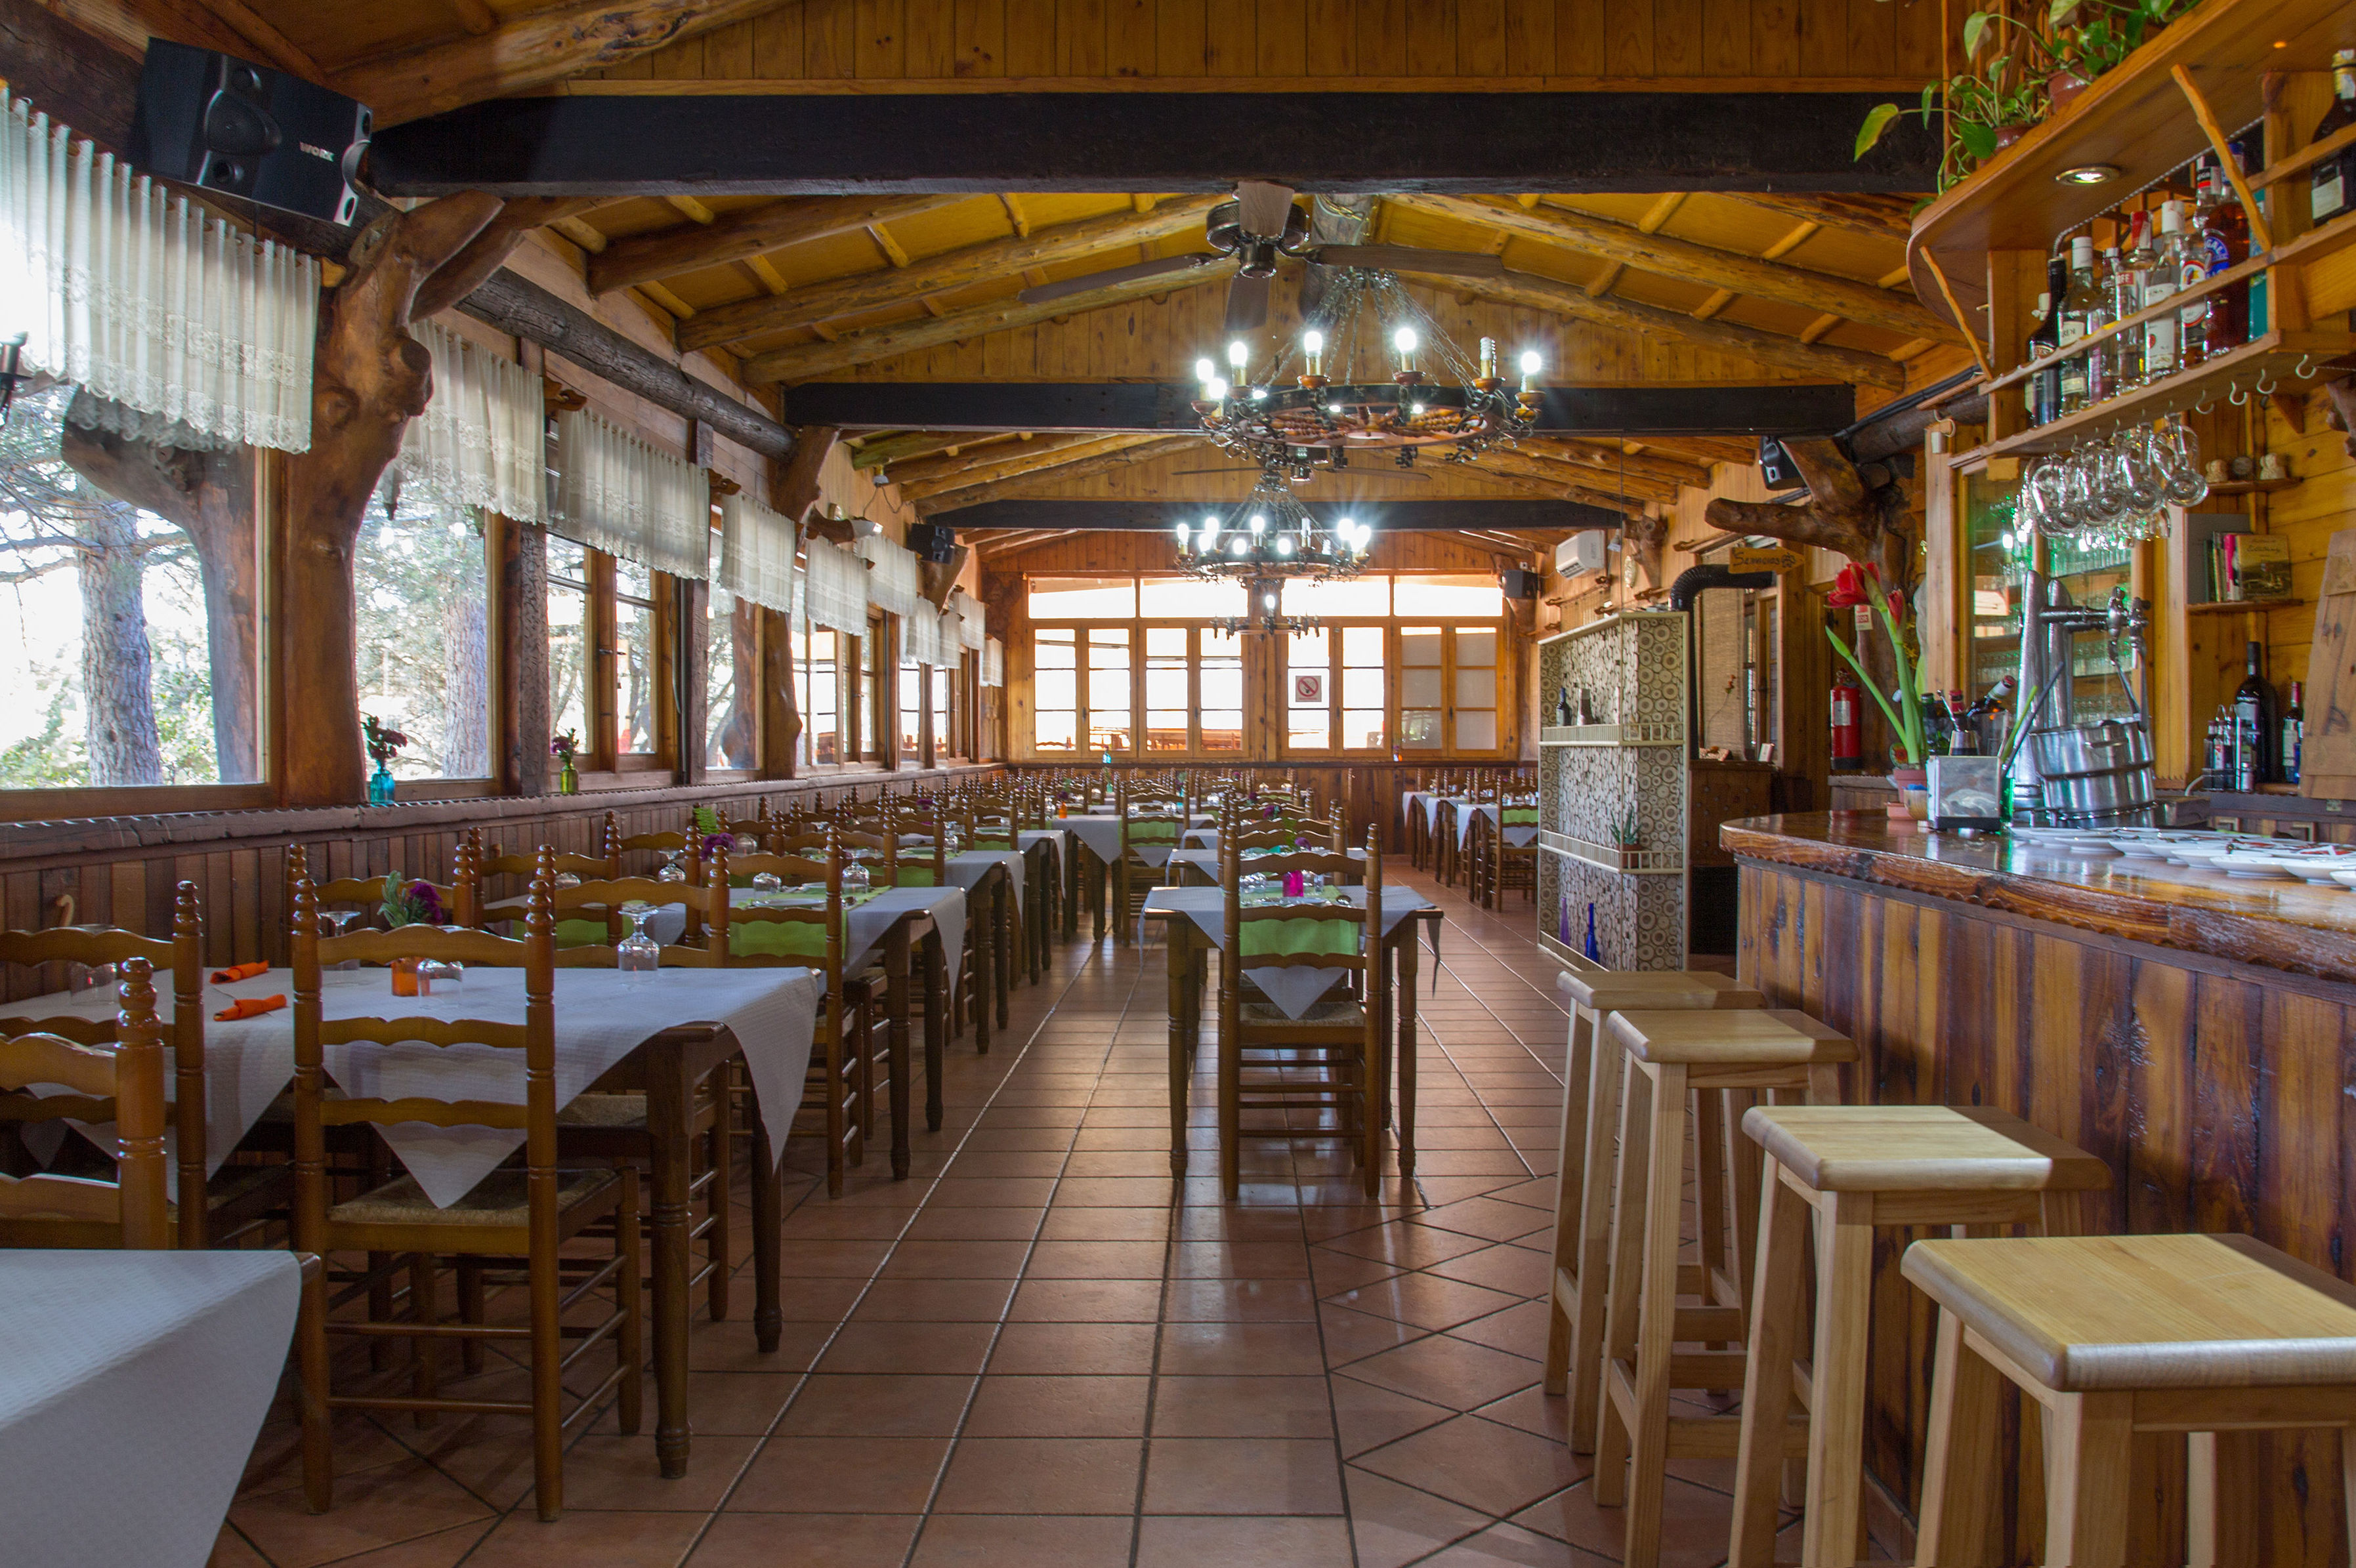 Restaurante de cocina casera tradicional en Navalón, Enguera, Valencia